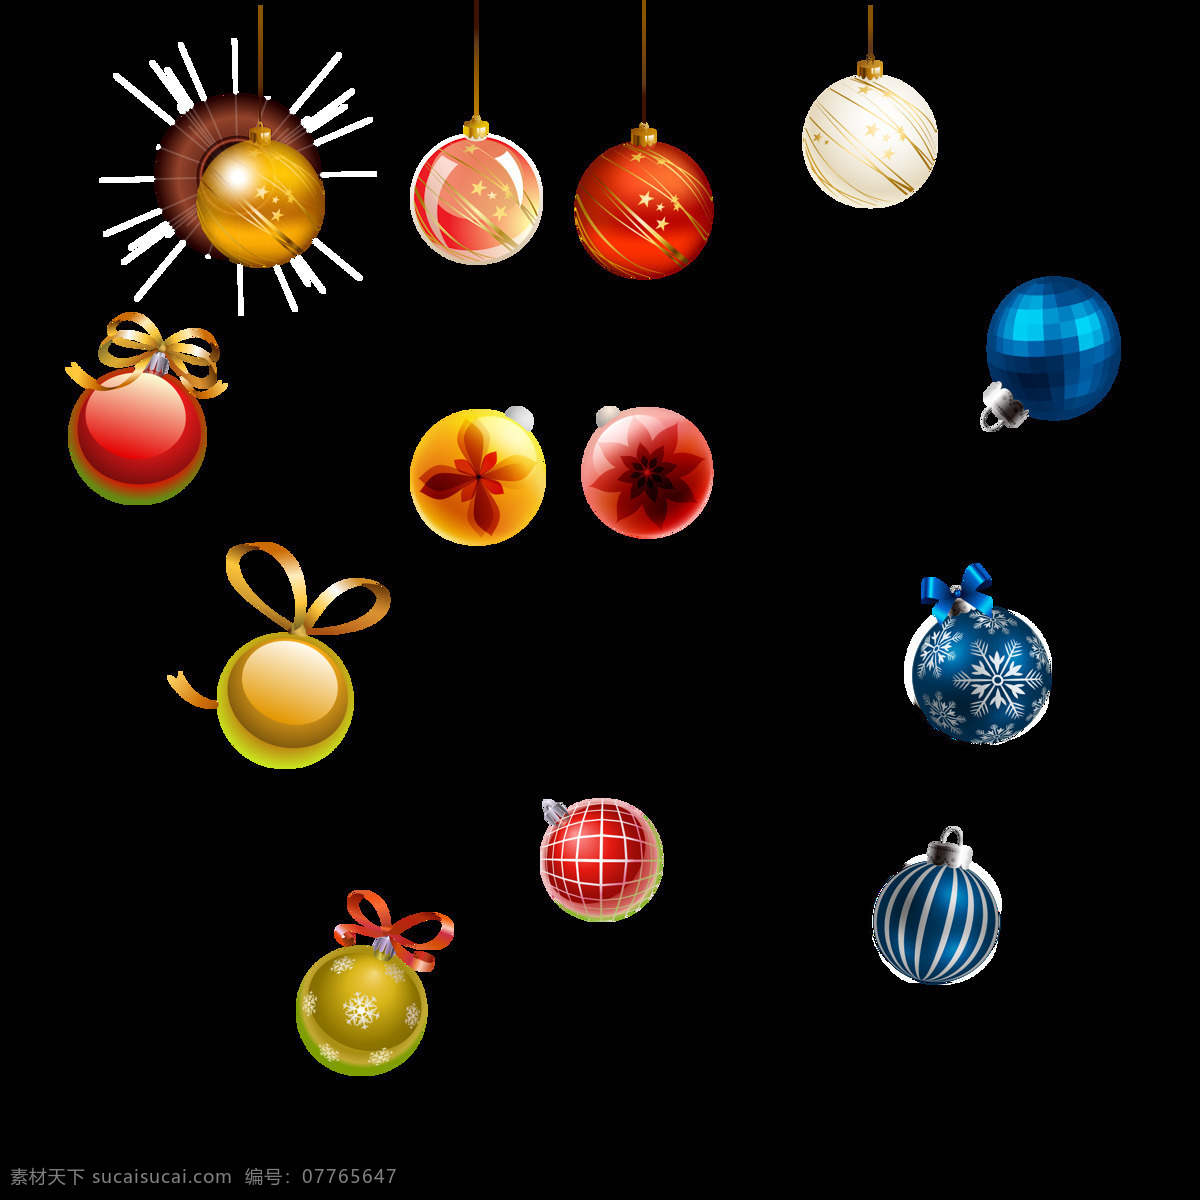 圣诞节 各种 五彩 圆球 元素 圣诞 装饰 图案